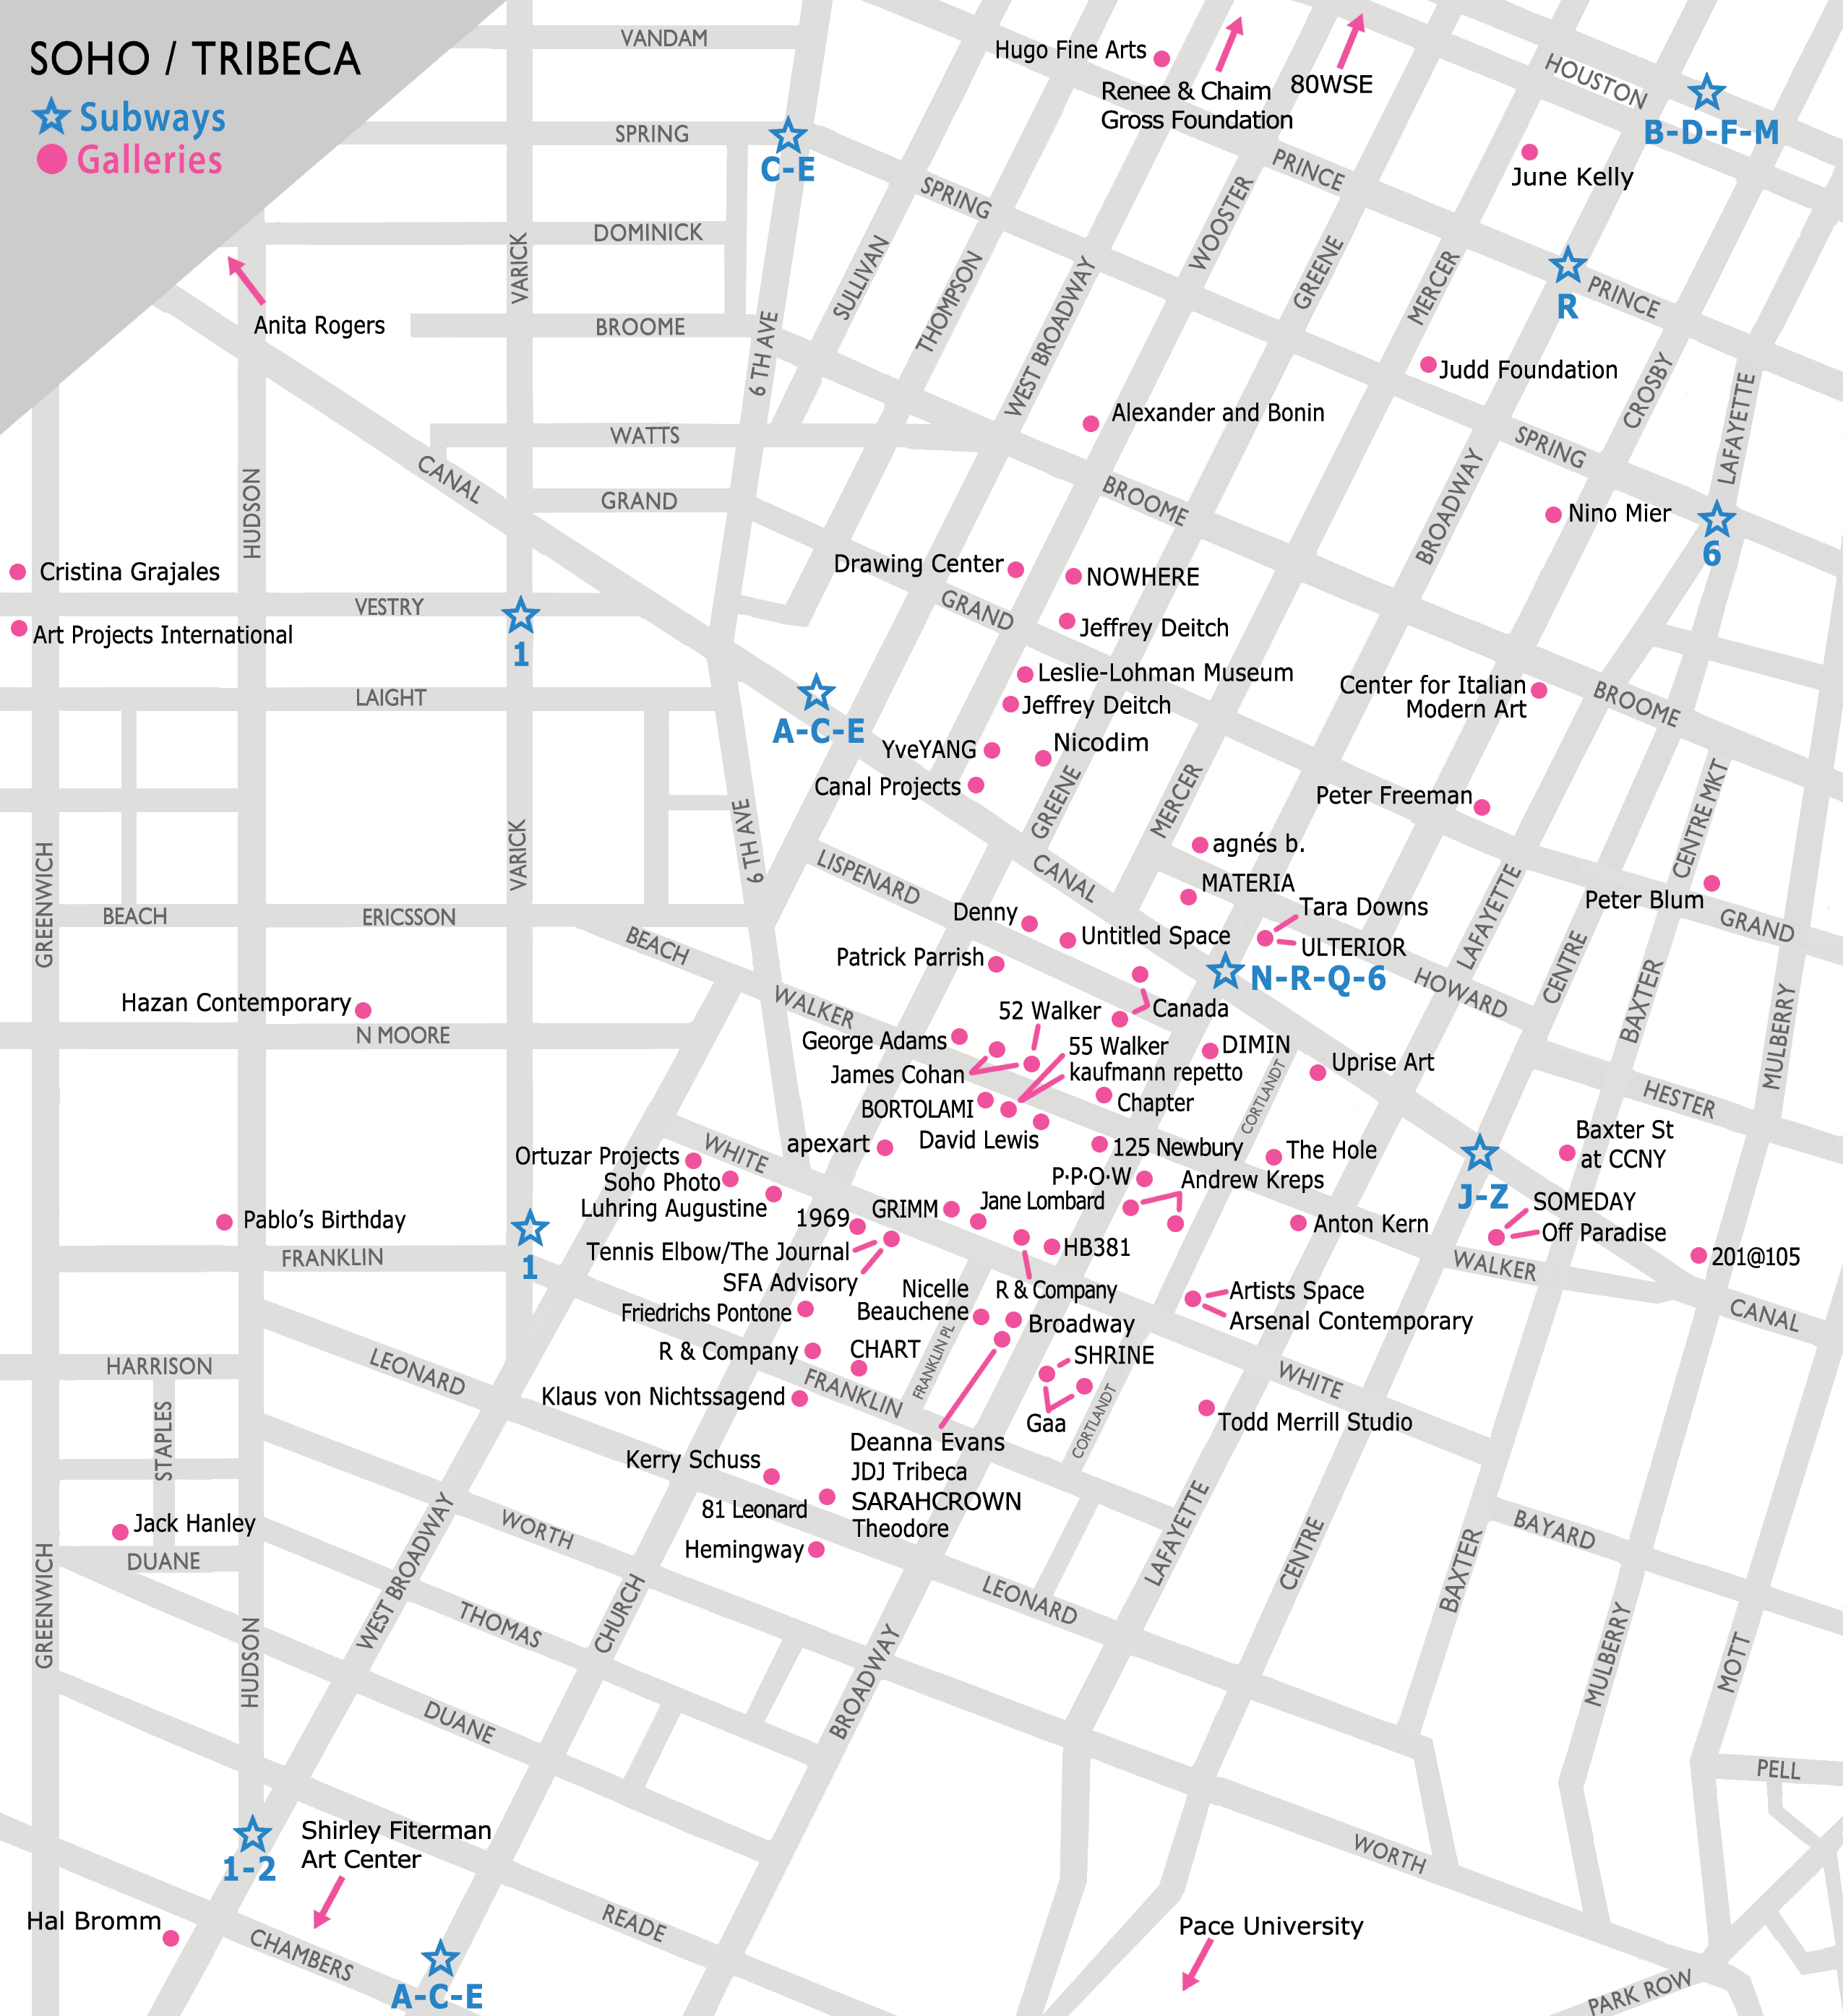 SOHO/Tribeca Gallery Map